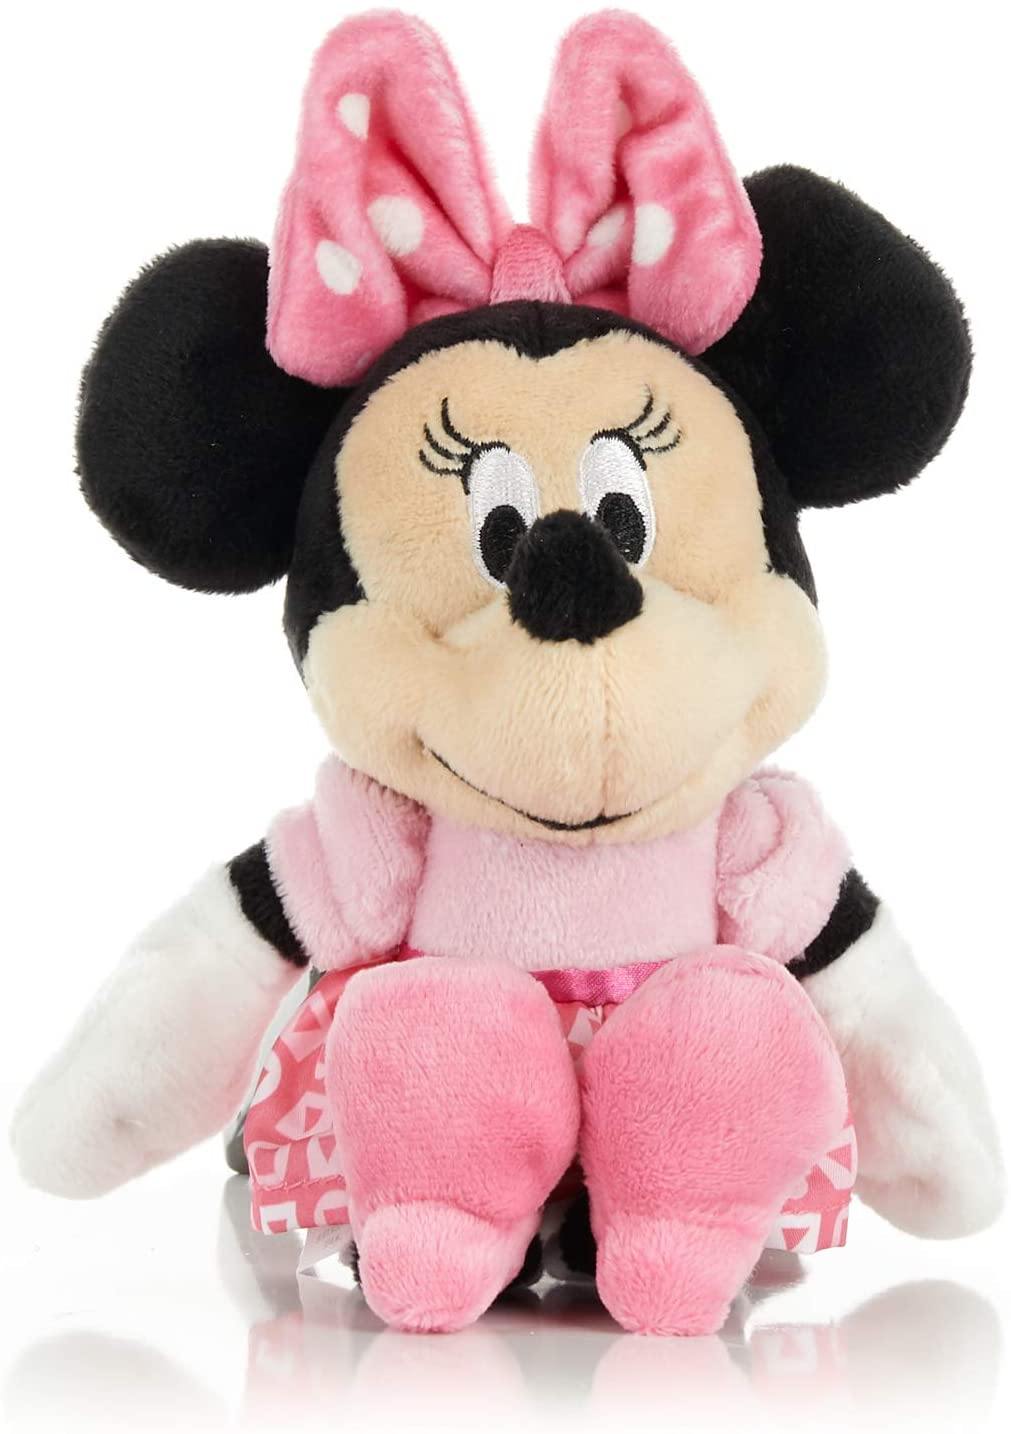 Mickey & Minnie 8" Jingler Plush